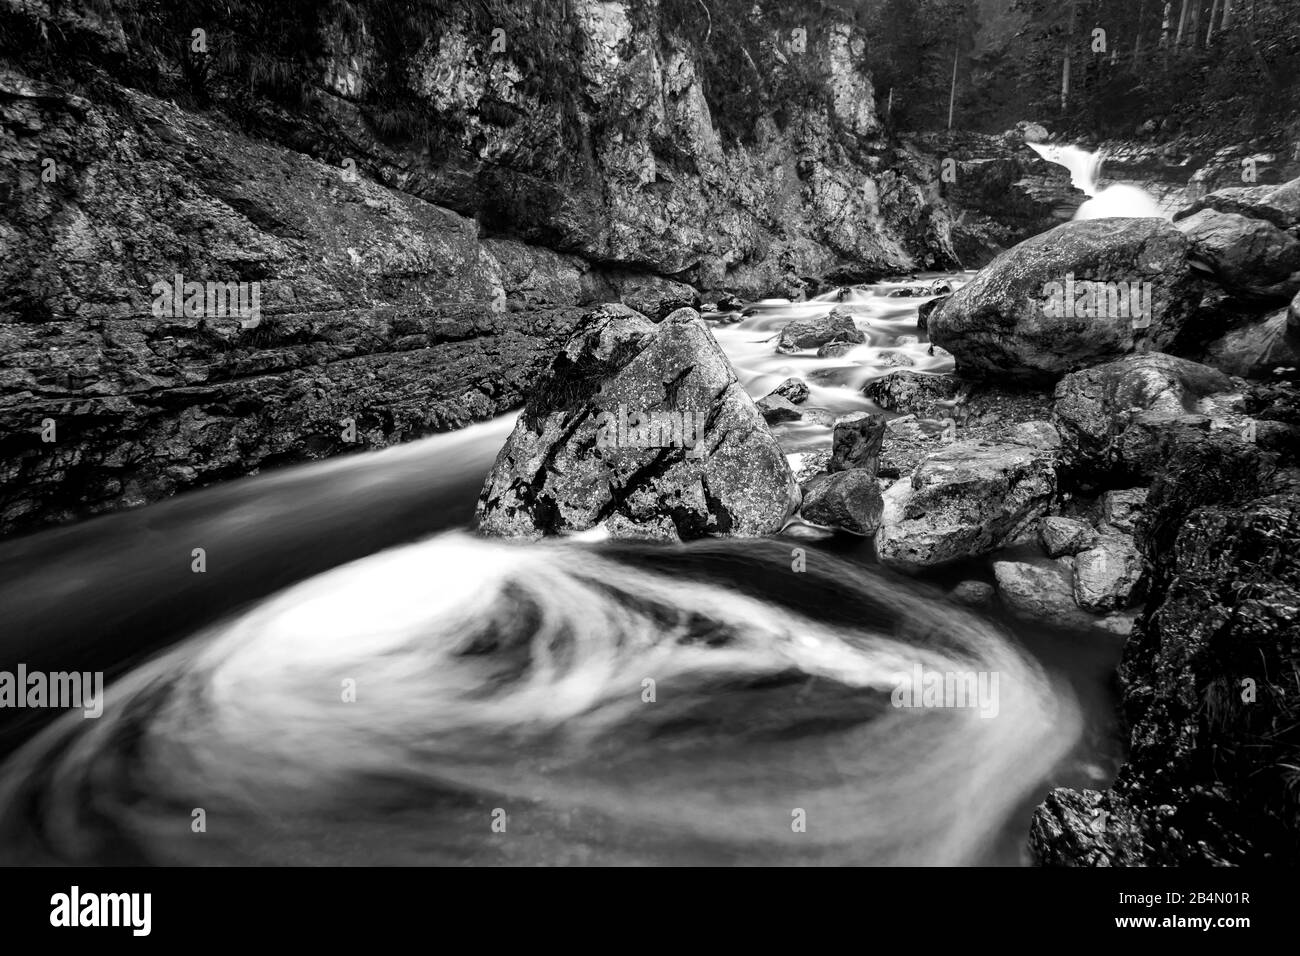 Il flusso d'acqua forma un giroscopio nel letto del torrente Kuchflucht vicino Garmisch-Partenkirchen Foto Stock